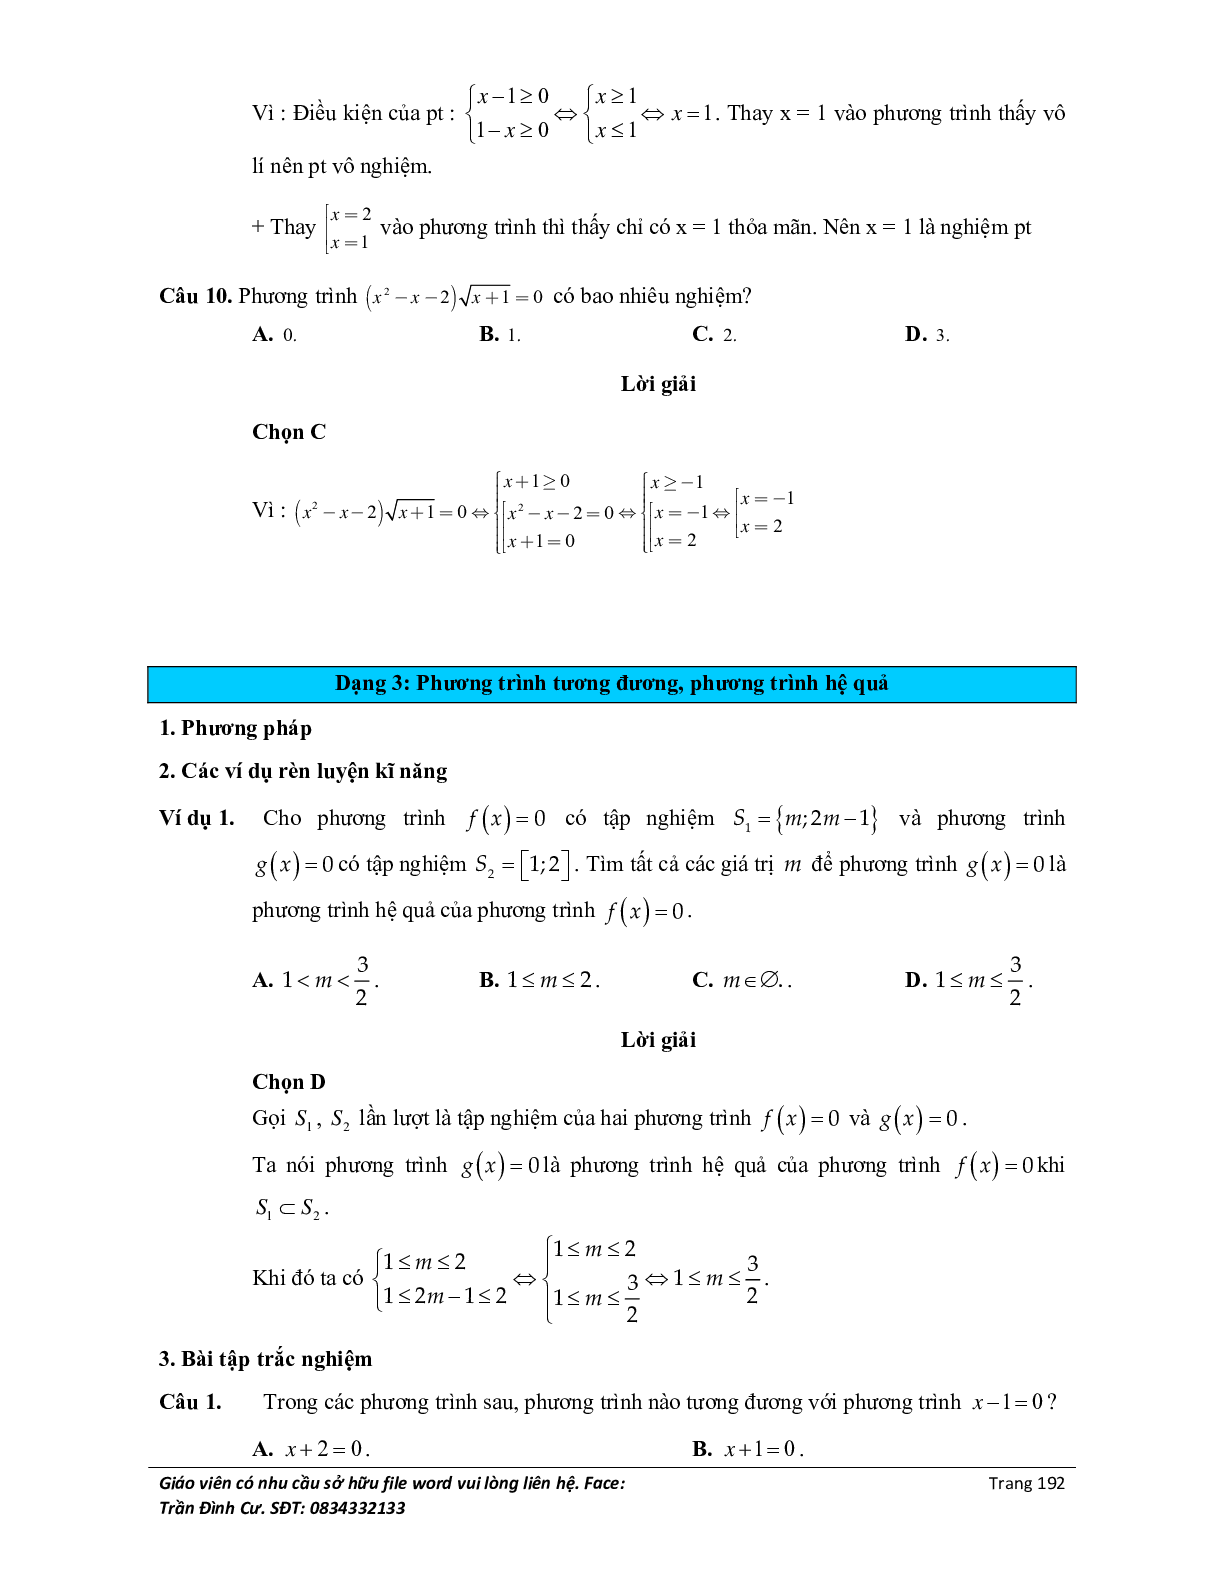 Đại cương về phương trình môn Toán lớp 10 (trang 10)